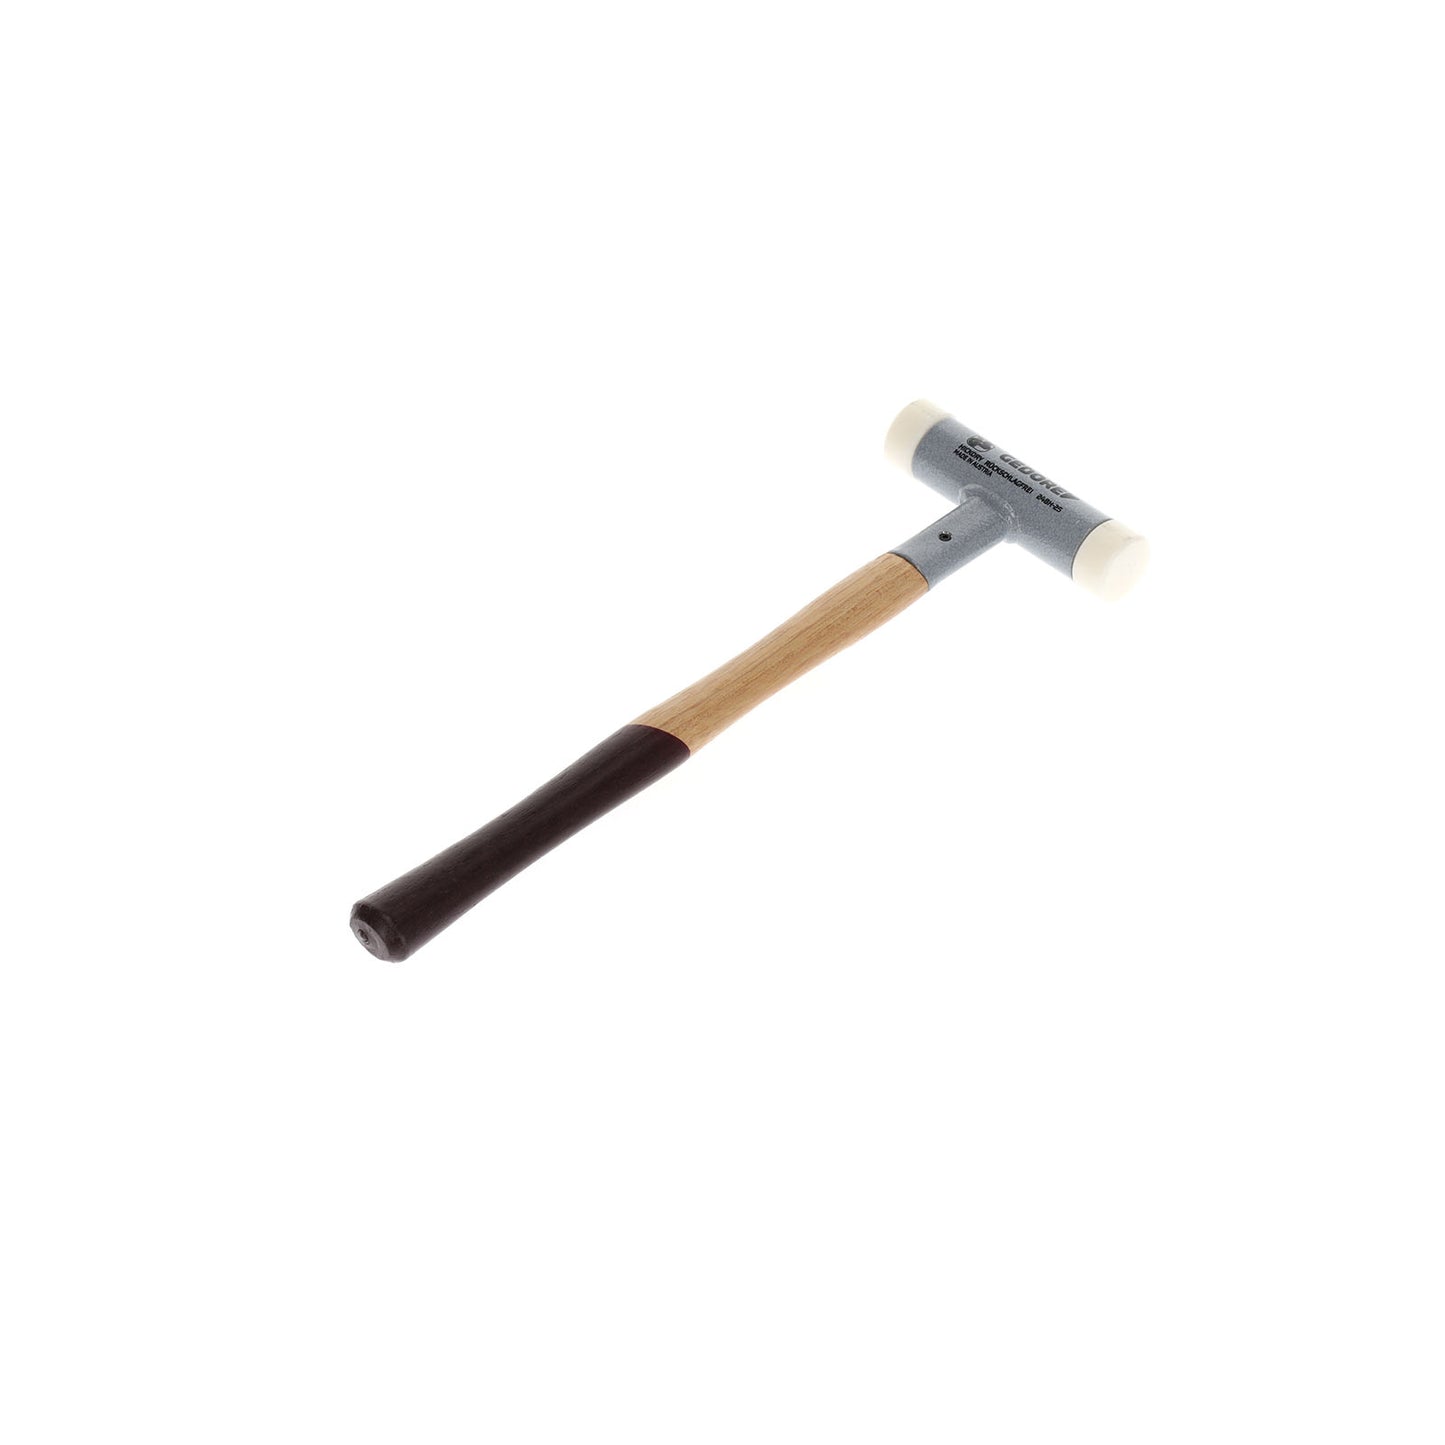 GEDORE 248 H-25 - Anti-rebound hammer d 25 mm (8728220)